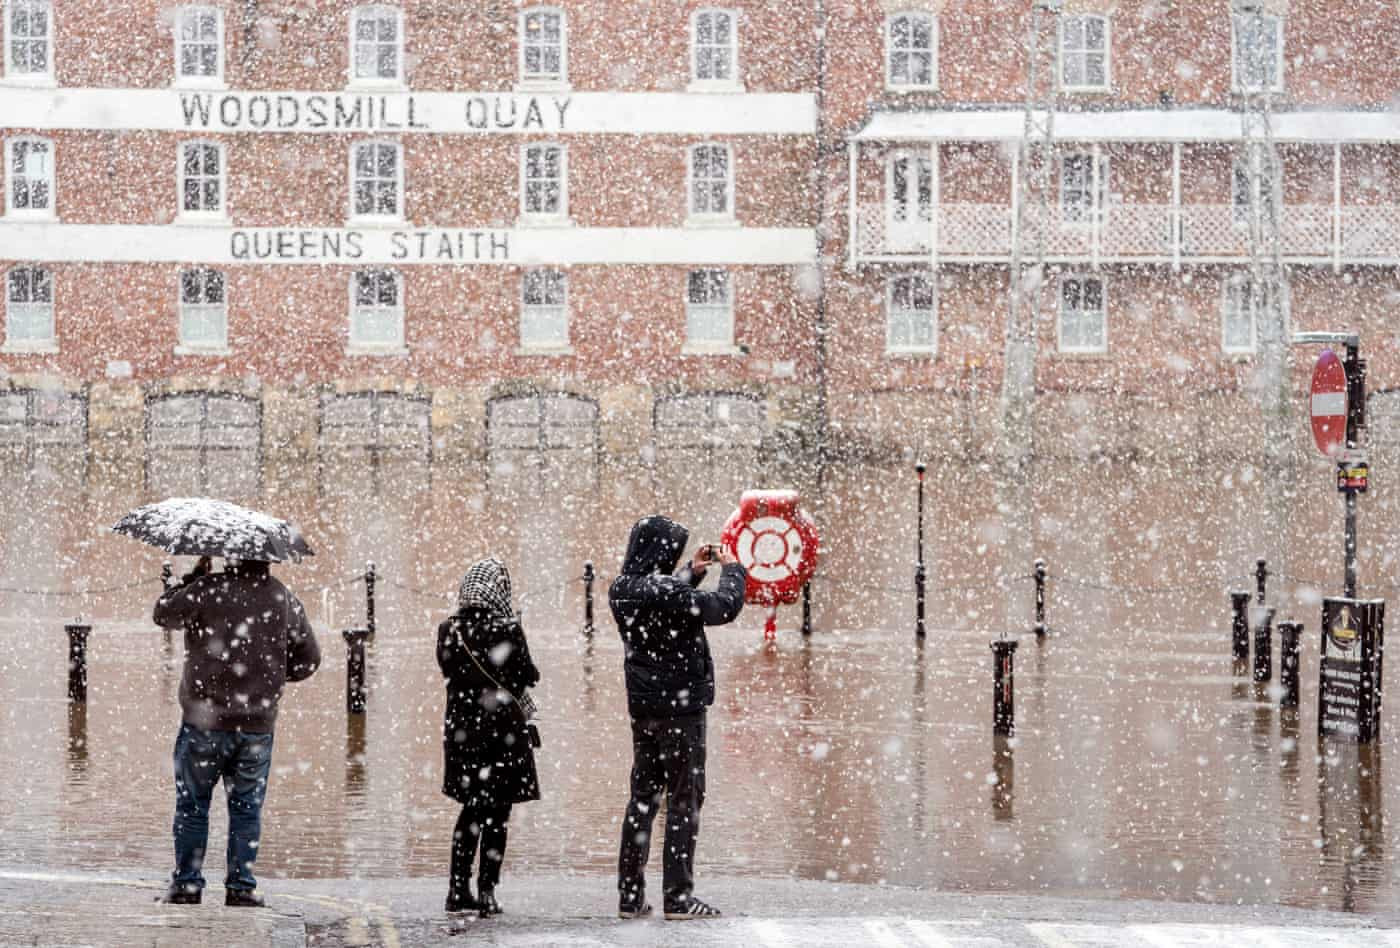 Người dân đứng nhìn dòng nước lũ giữa trận mưa tuyết sau khi cơn bão Eunice tàn phá Vương quốc Anh và Ireland. Ảnh: The Guardian.